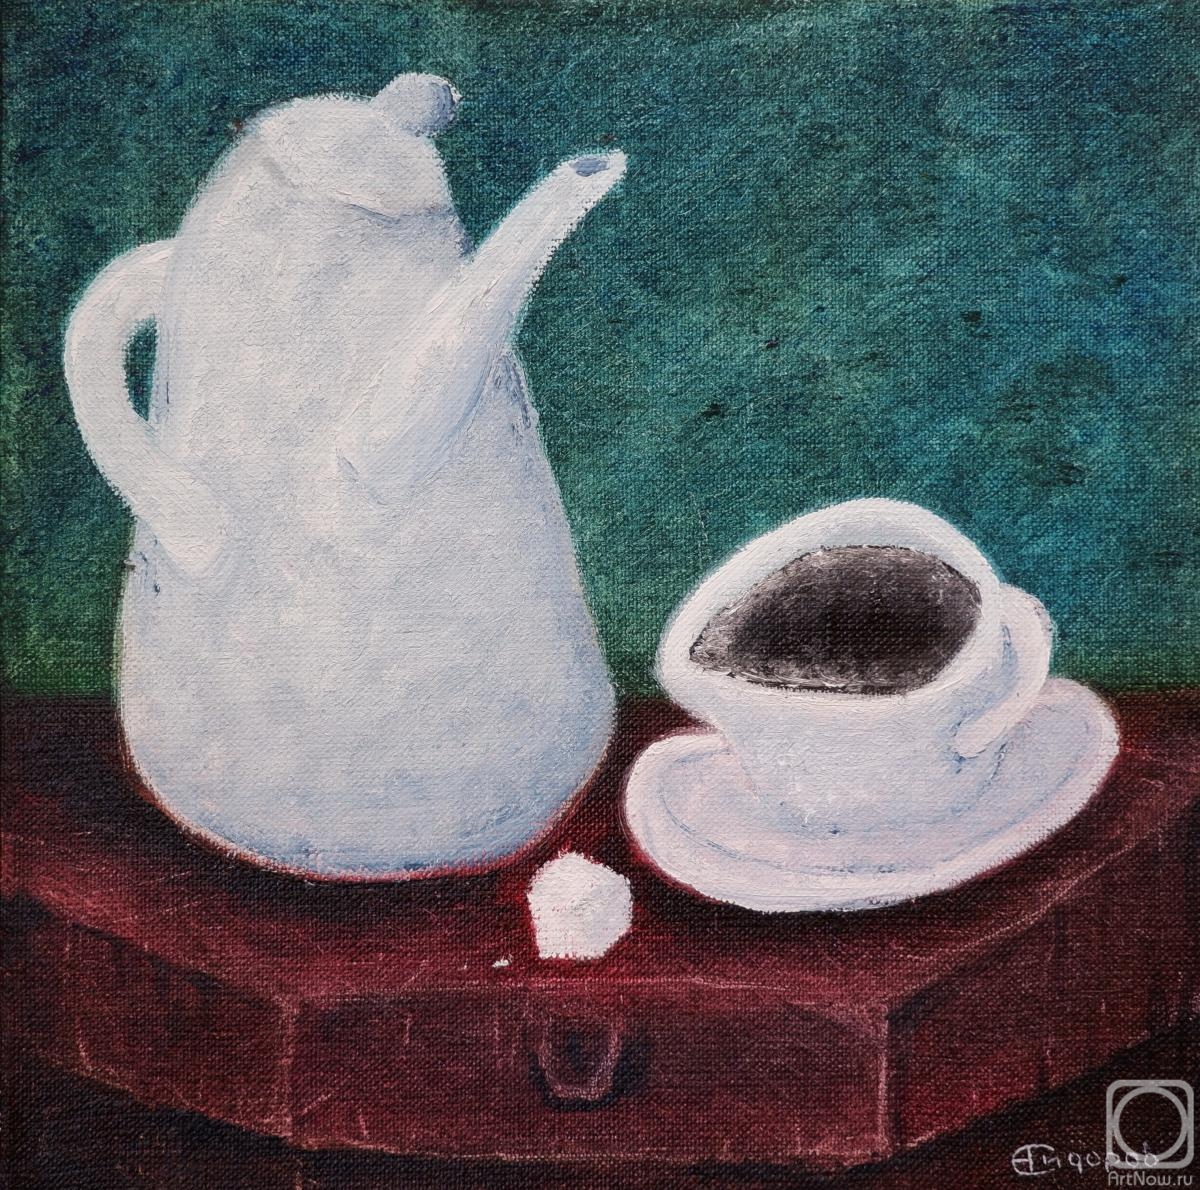 Sidorov Oleg. Coffee with sugar